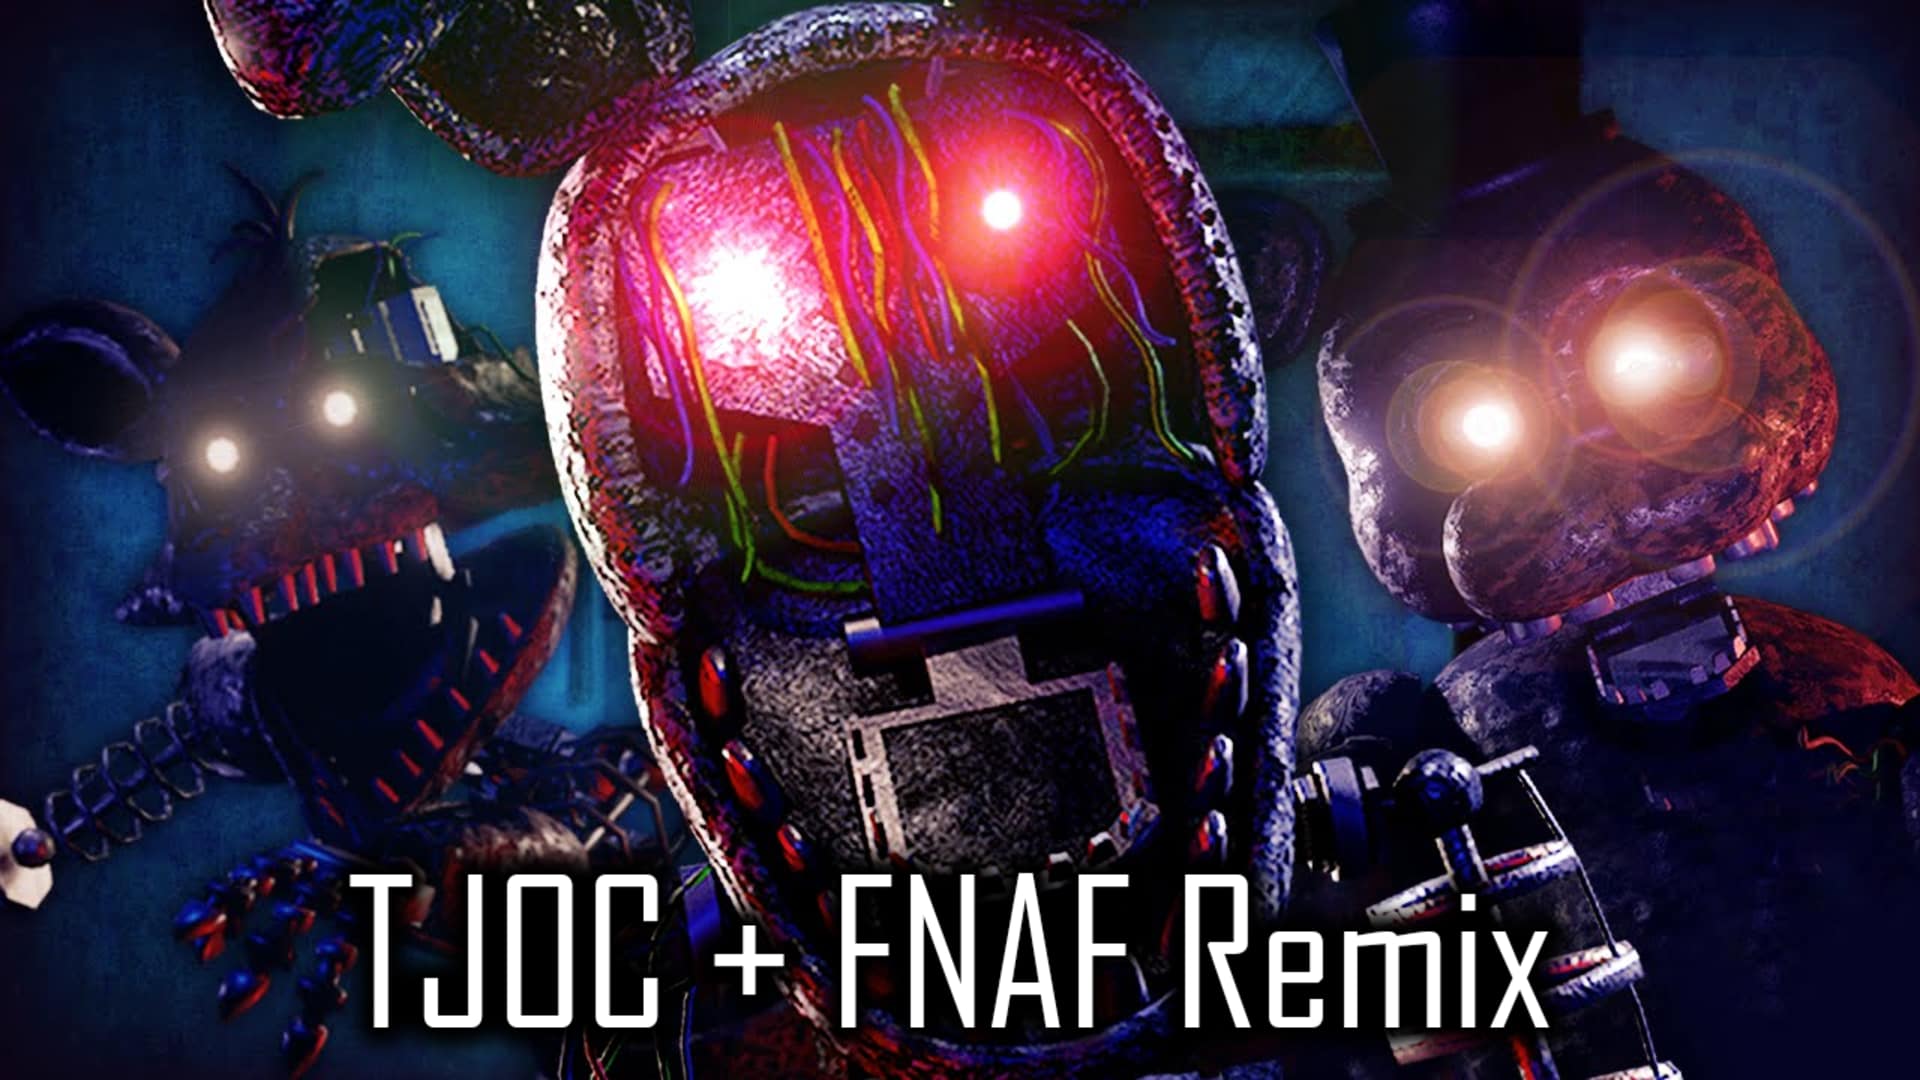 Tjoc Fnaf Rap Remix Roblox Id Robux Generator Working - skachat besplatno pesnyu i love it roblox music video v mp3 i bez registracii mp3hq org